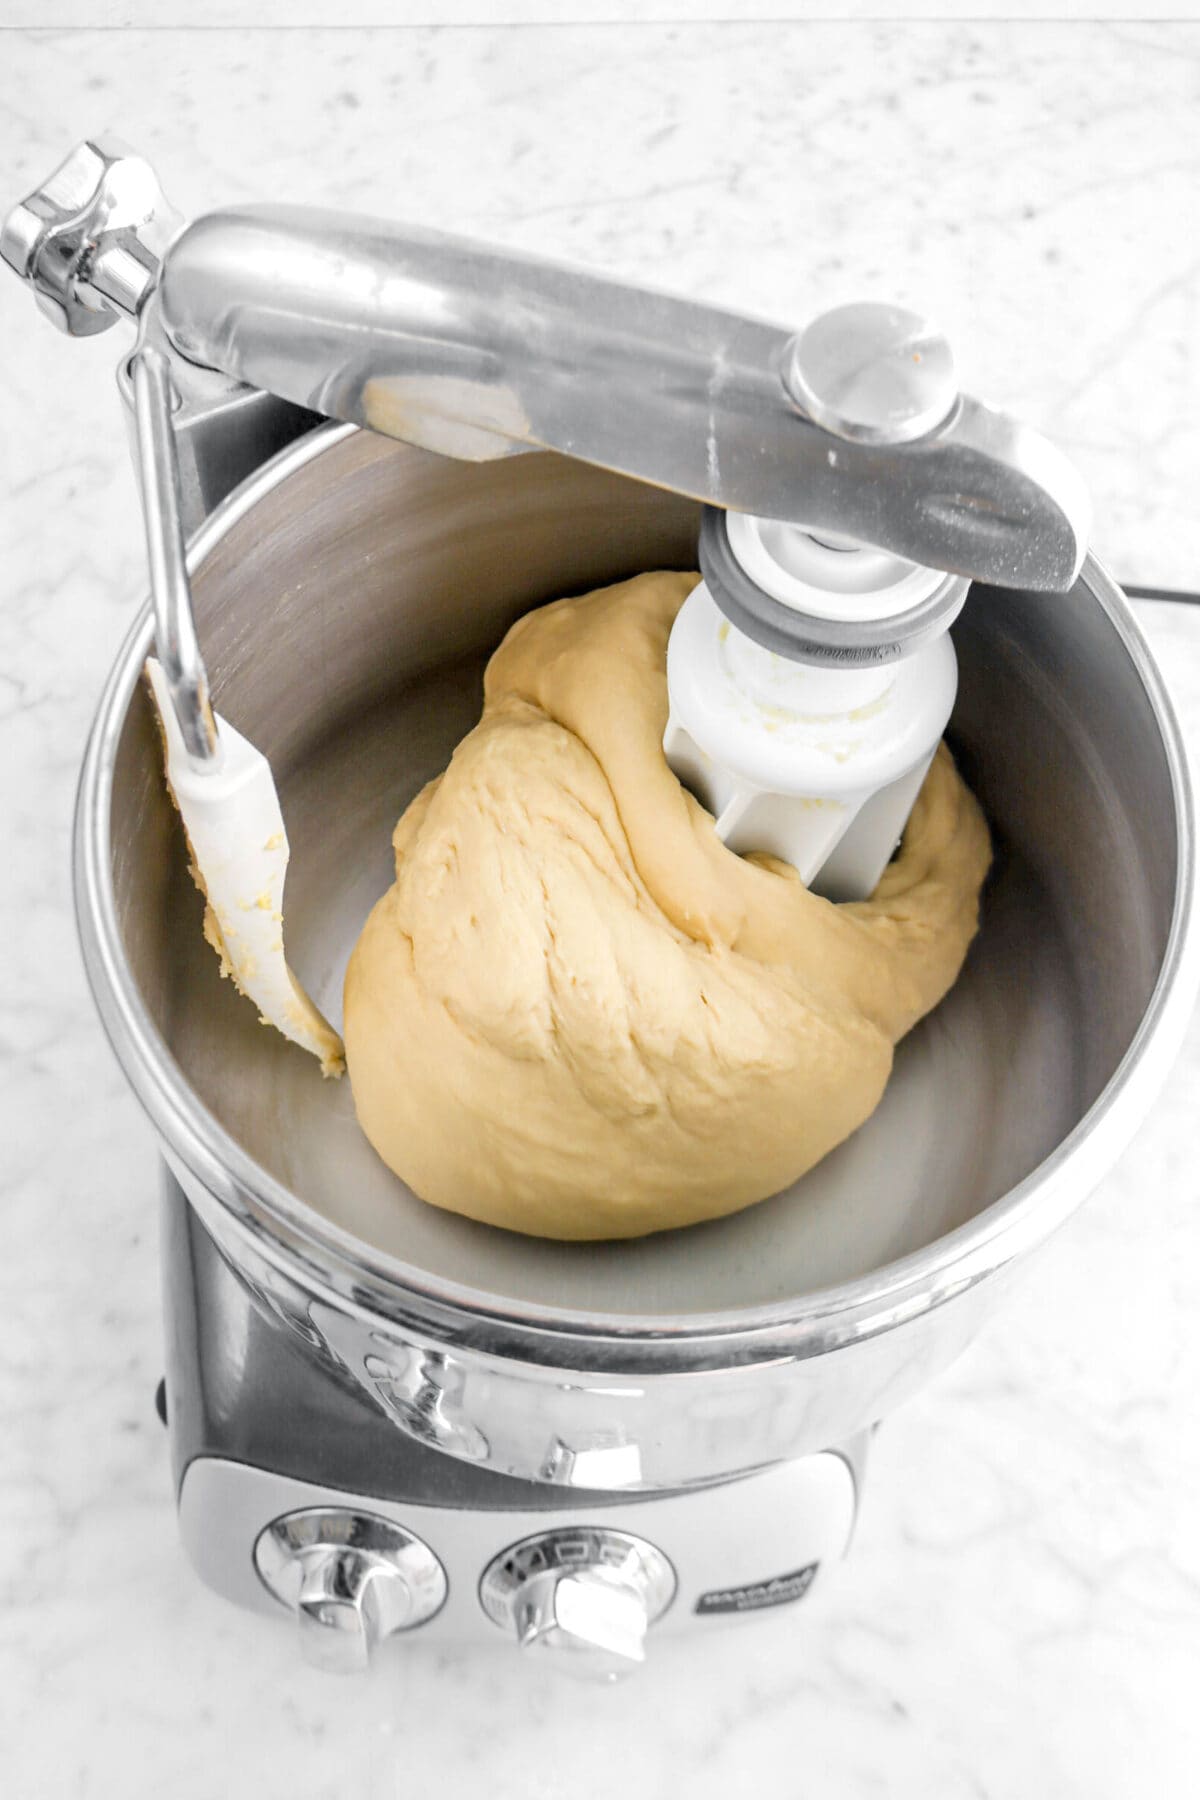 smooth dough in mixer